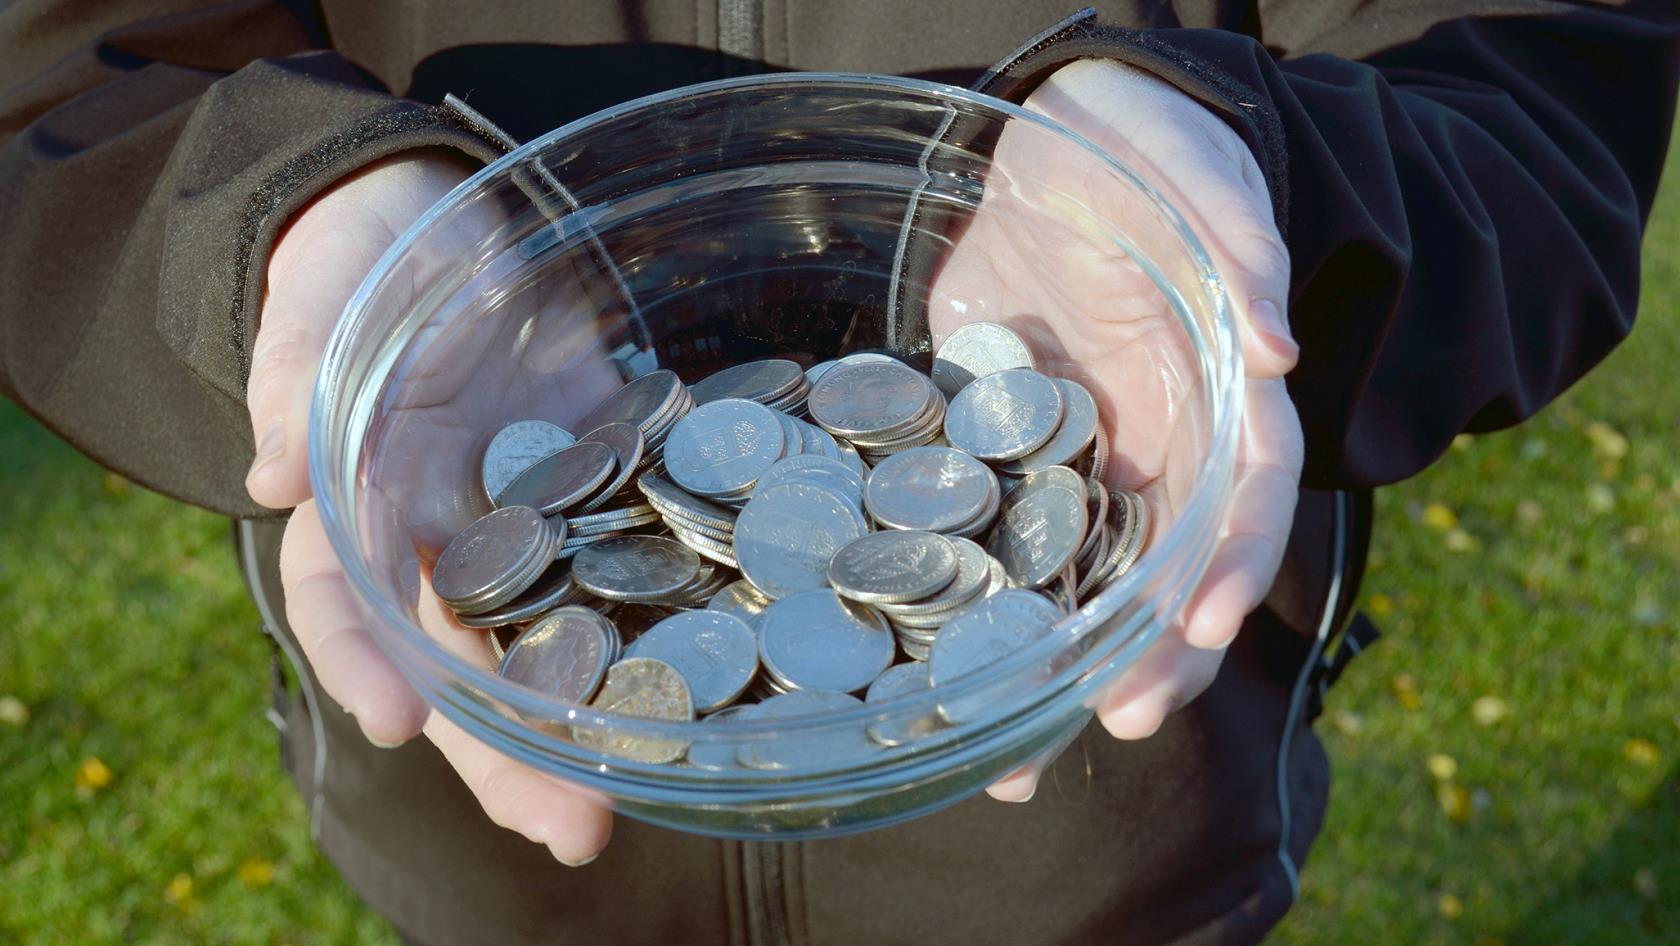 Värdet av alla mynt som blir ogiltiga i sommar beräknas till 2,7 miljarder – en smått otrolig summa. Så låt inte dina växelpengar bli liggande – de kan göra skillnad! 